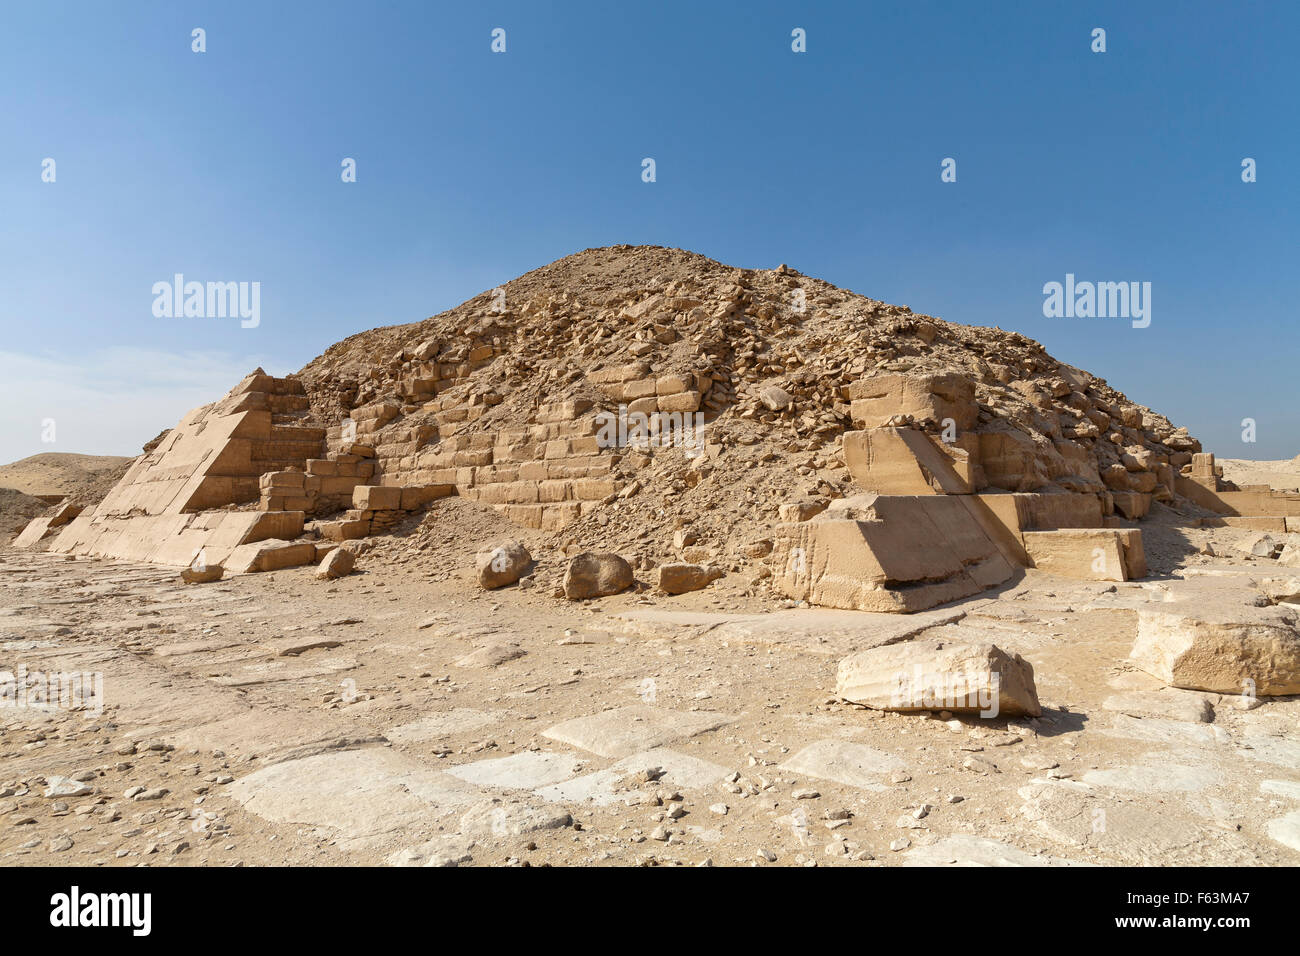 Pyramide de Unas vu de l'angle sud-est de la nécropole de Sakkarah aussi connu sous le nom de Saqqara Égypte Banque D'Images